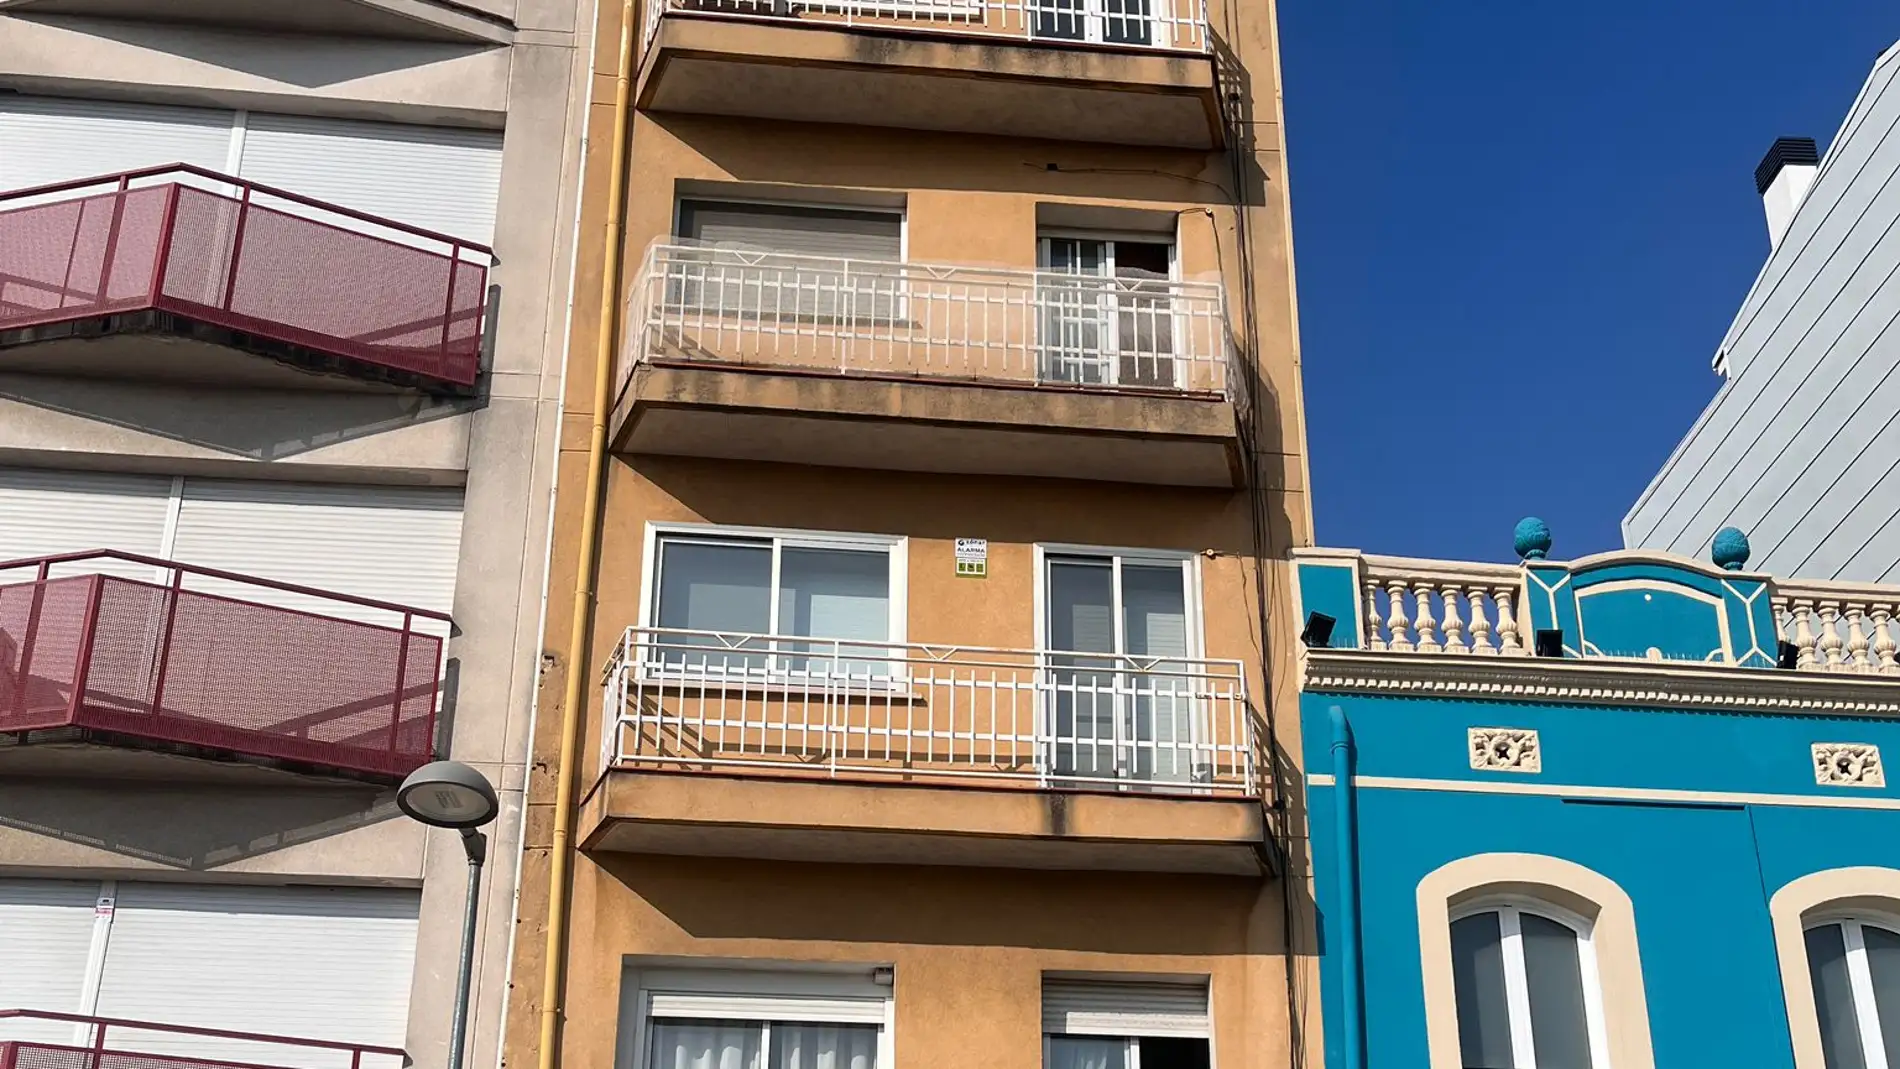 Desallotjat un nou bloc de pisos de Badalona per risc d’esfondrament després de l’aparició d’una esquerda